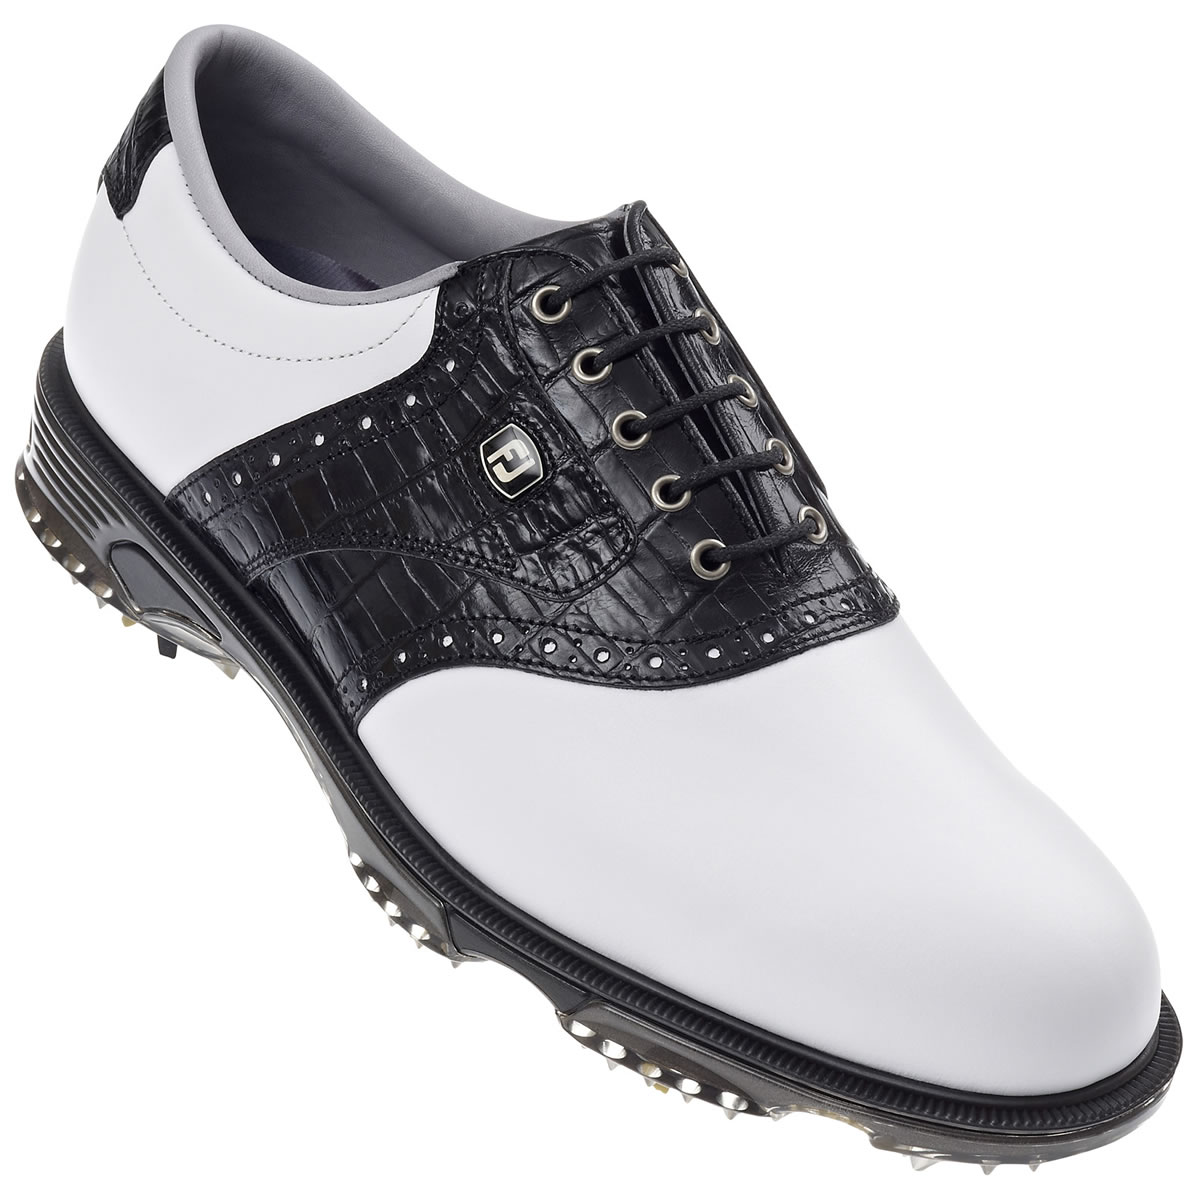 DryJoys Tour Golf Shoes White/Black #53767